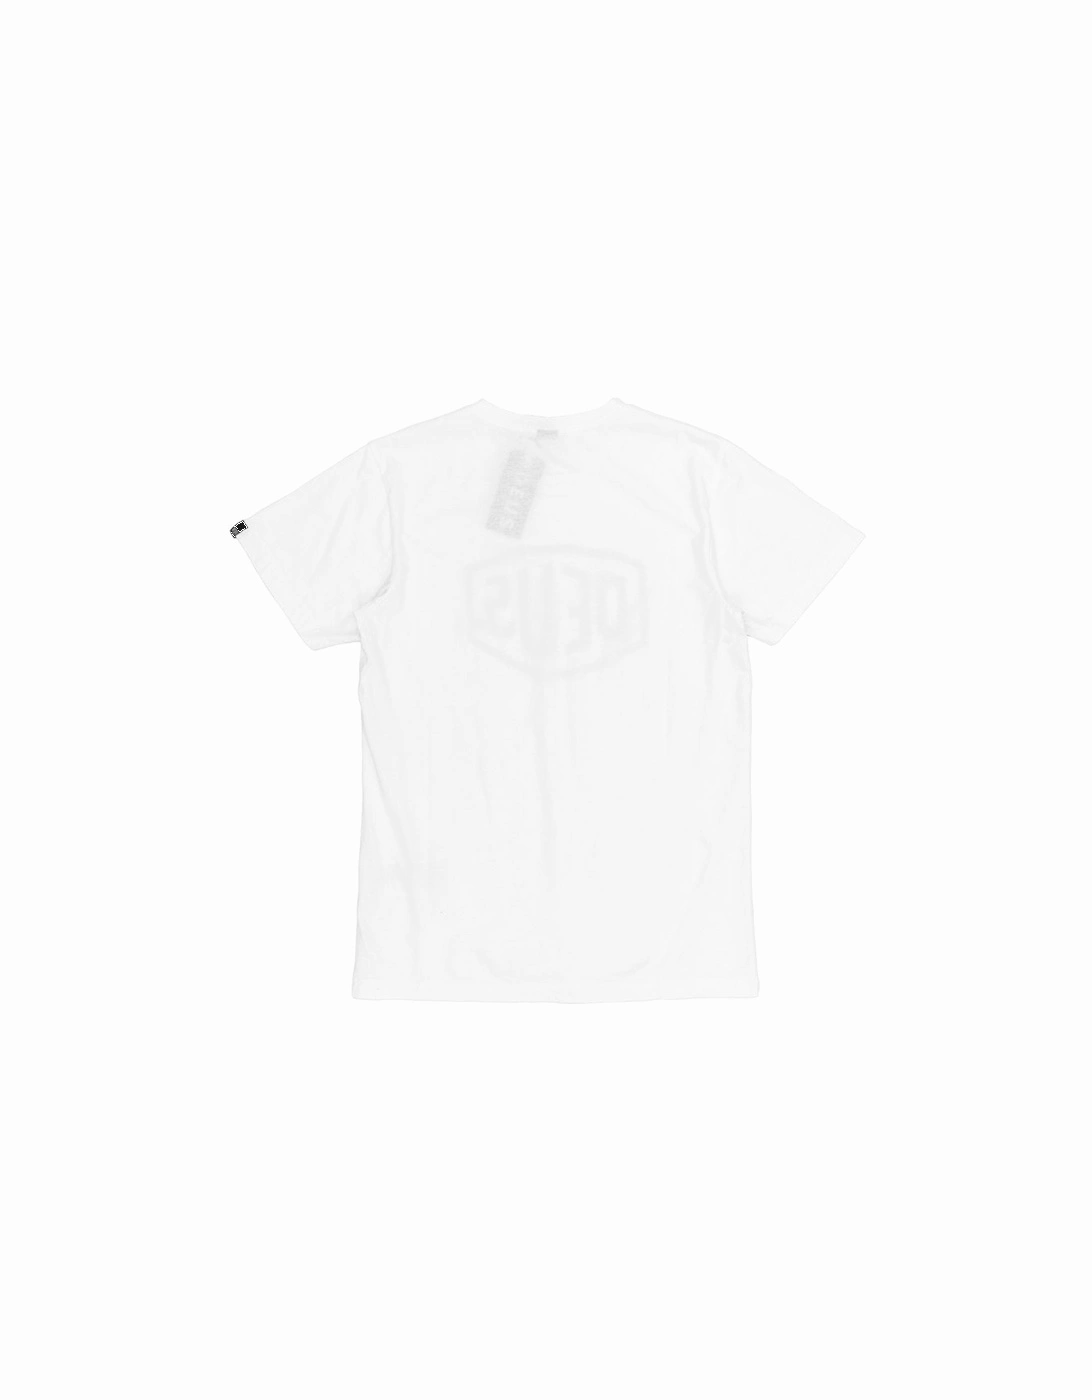 Shield T-Shirt - White